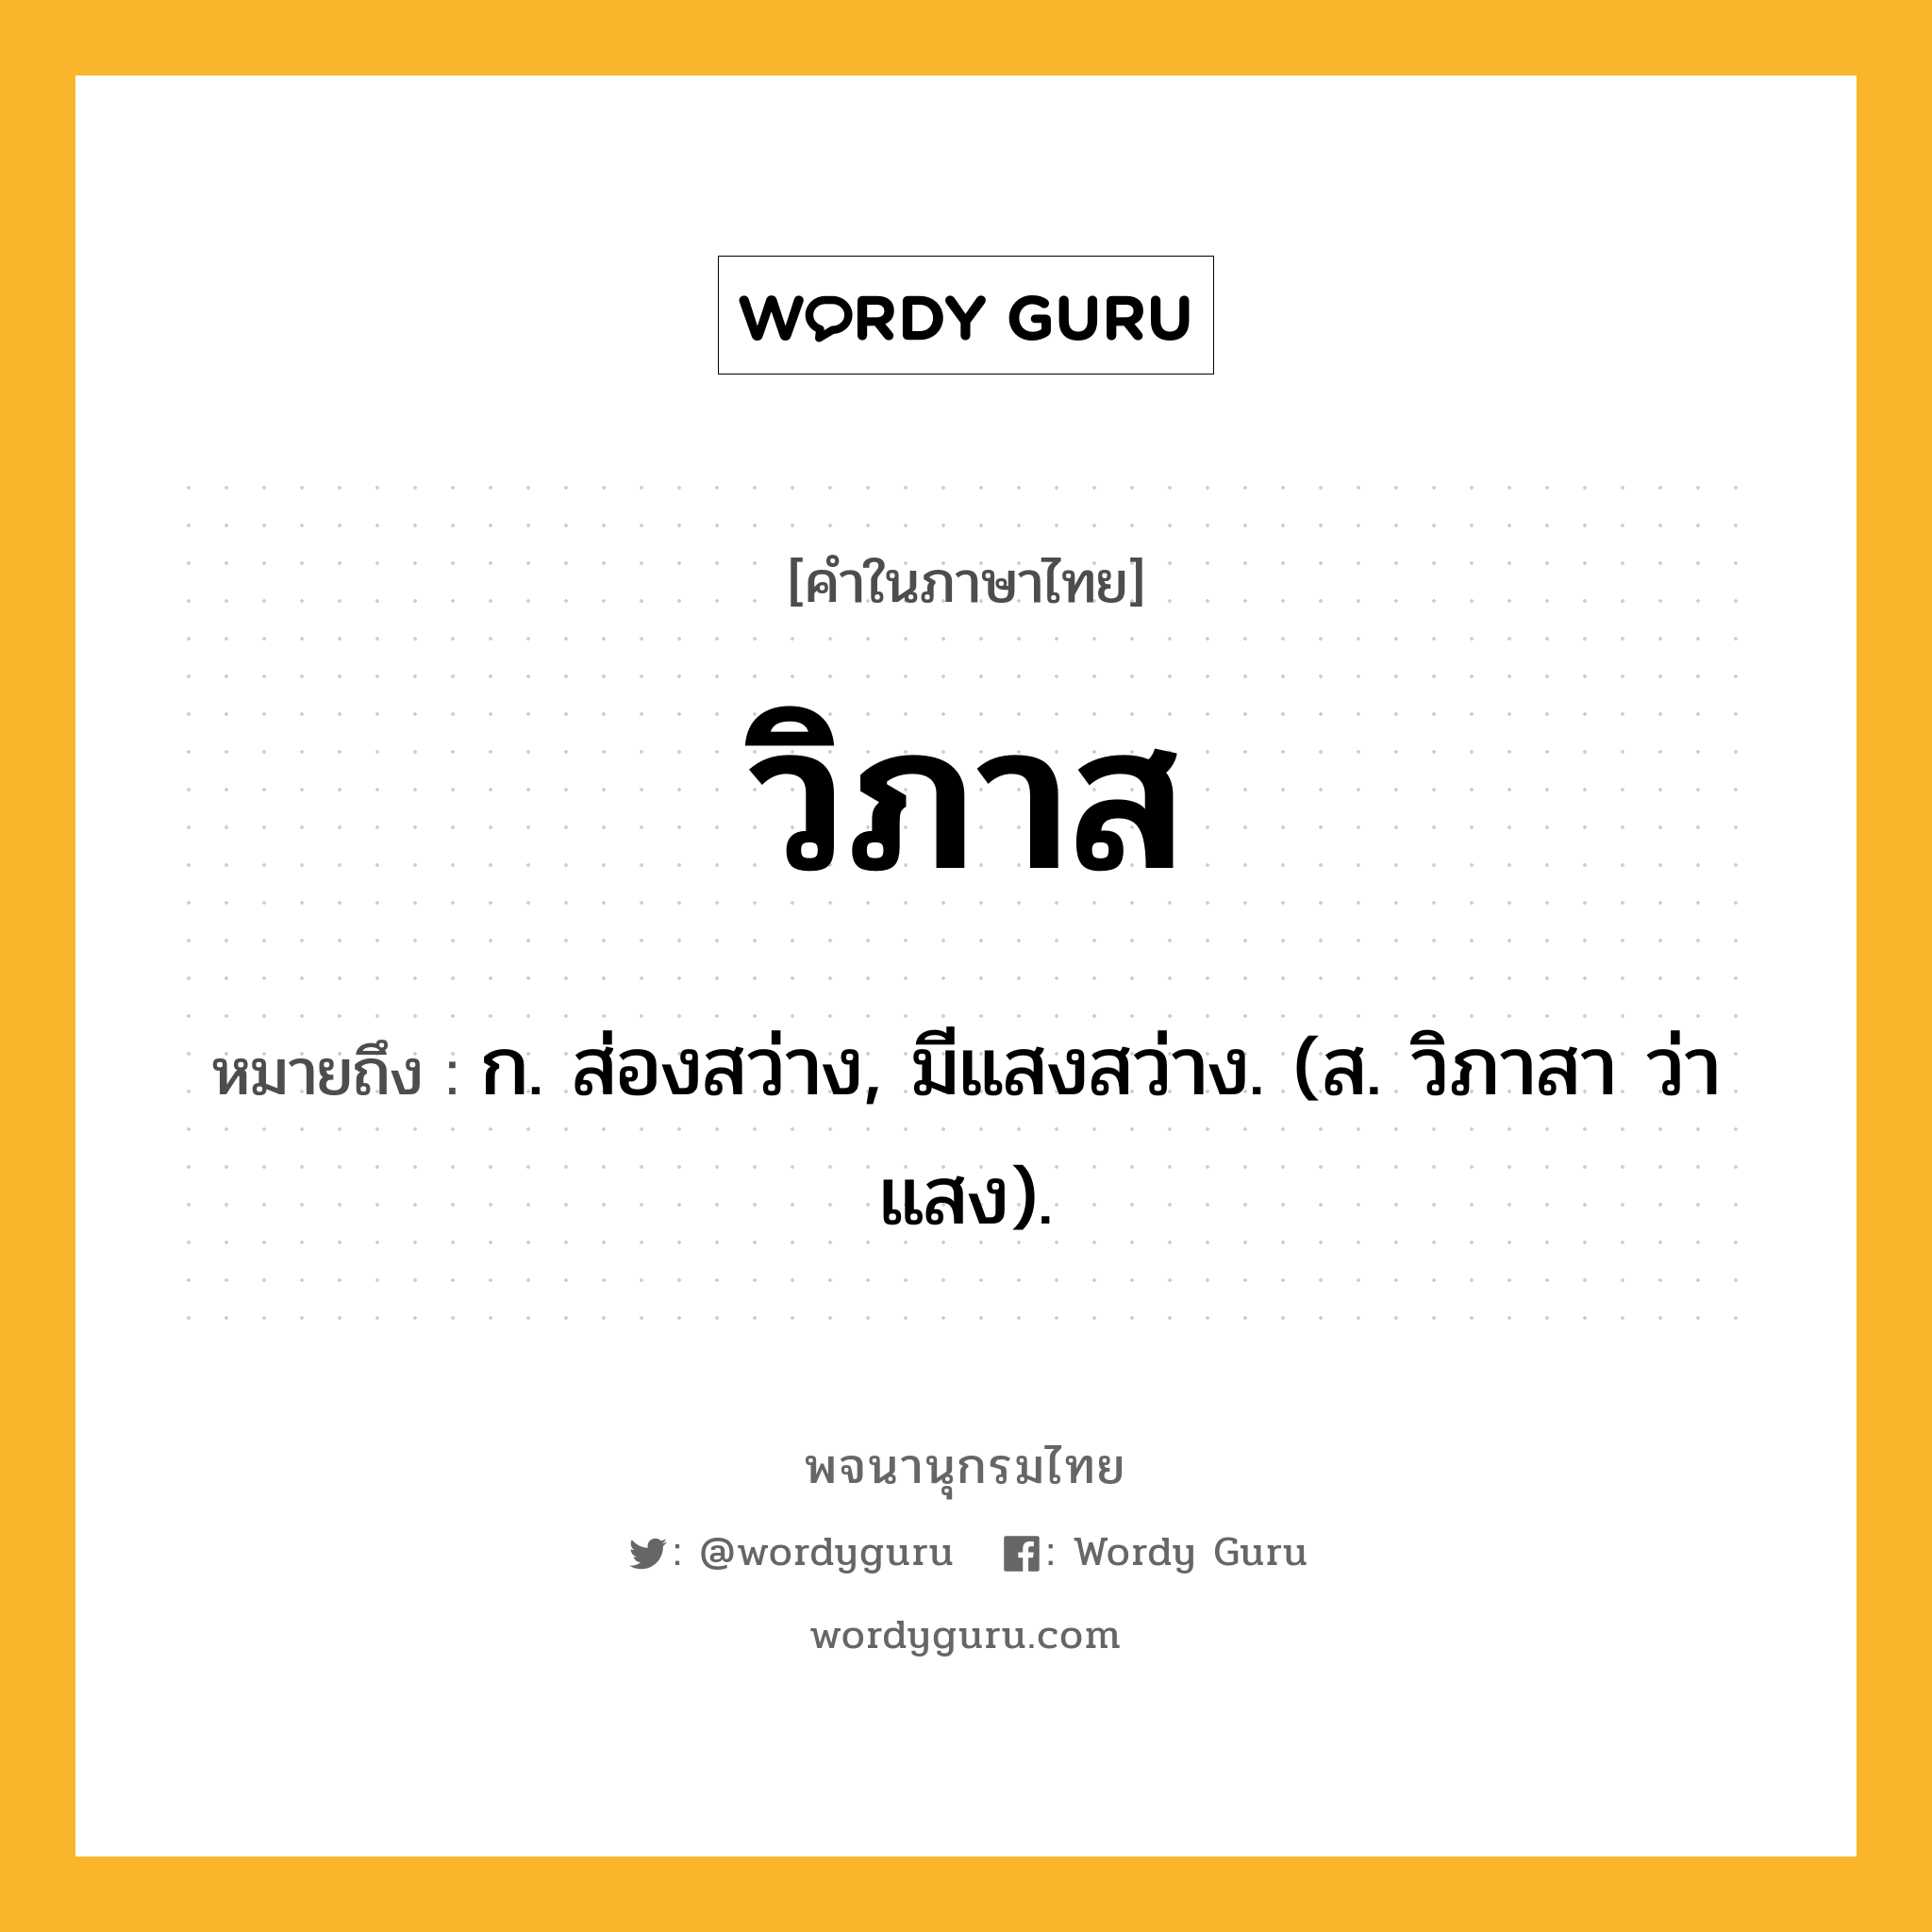 วิภาส ความหมาย หมายถึงอะไร?, คำในภาษาไทย วิภาส หมายถึง ก. ส่องสว่าง, มีแสงสว่าง. (ส. วิภาสา ว่า แสง).